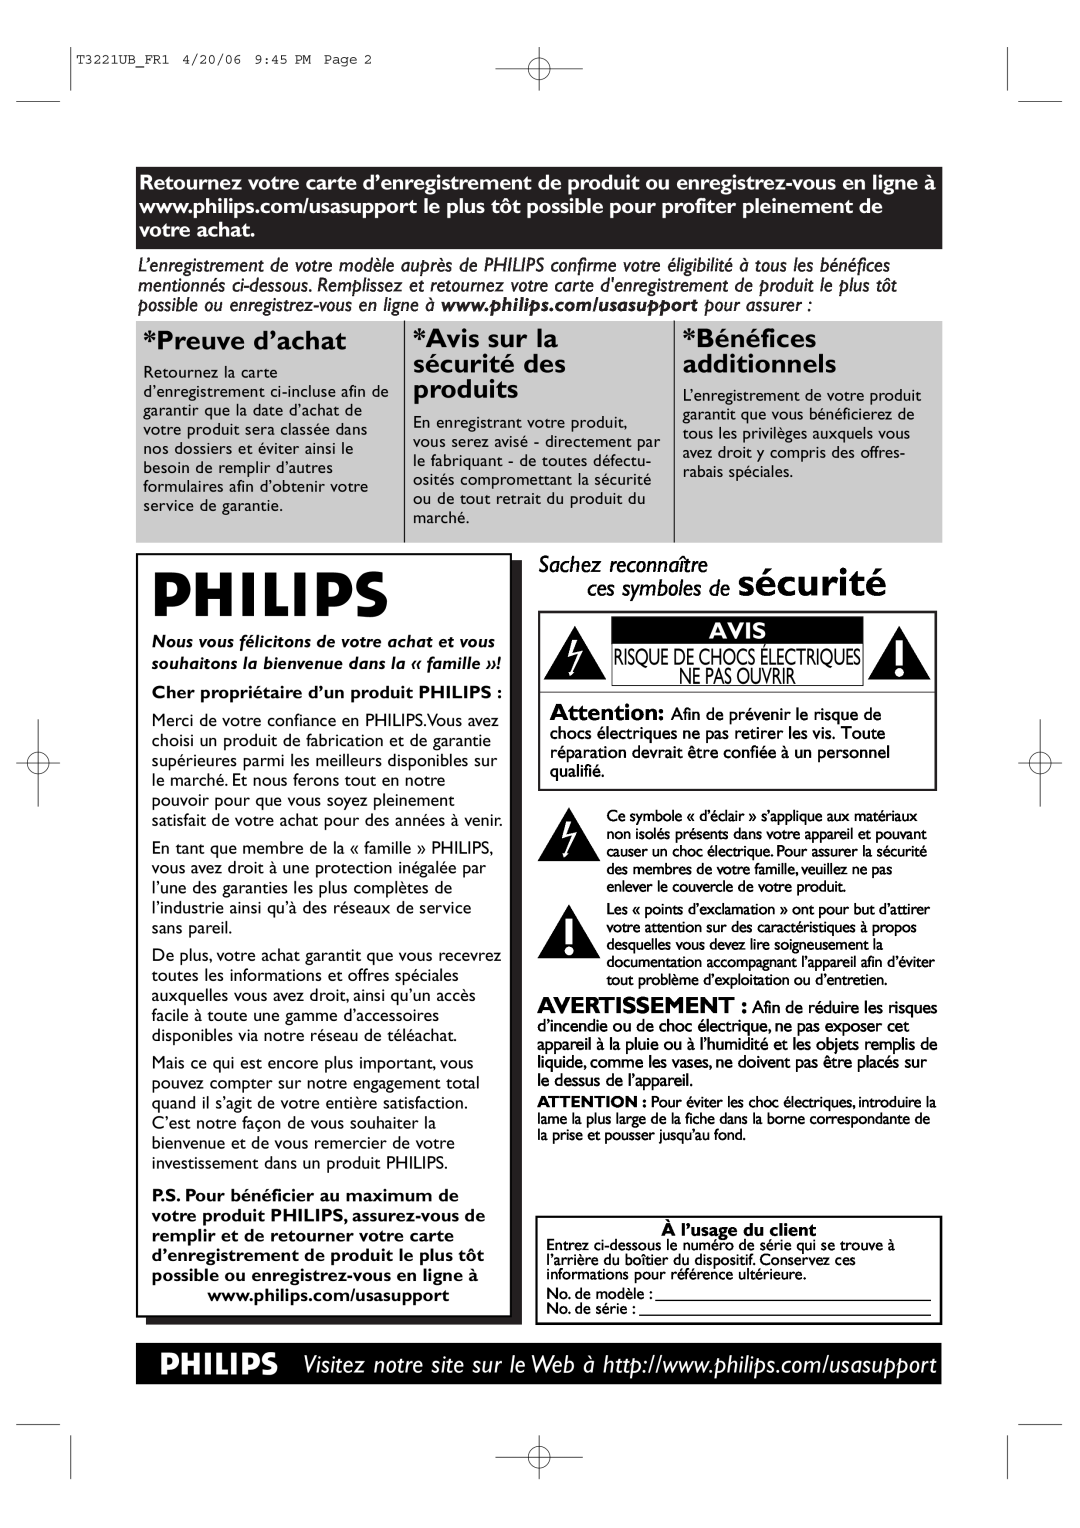 Philips 27PC4326/37 Risque De Chocs Électriques Ne Pas Ouvrir, Cher propriétaire d’un produit PHILIPS, À l’usage du client 